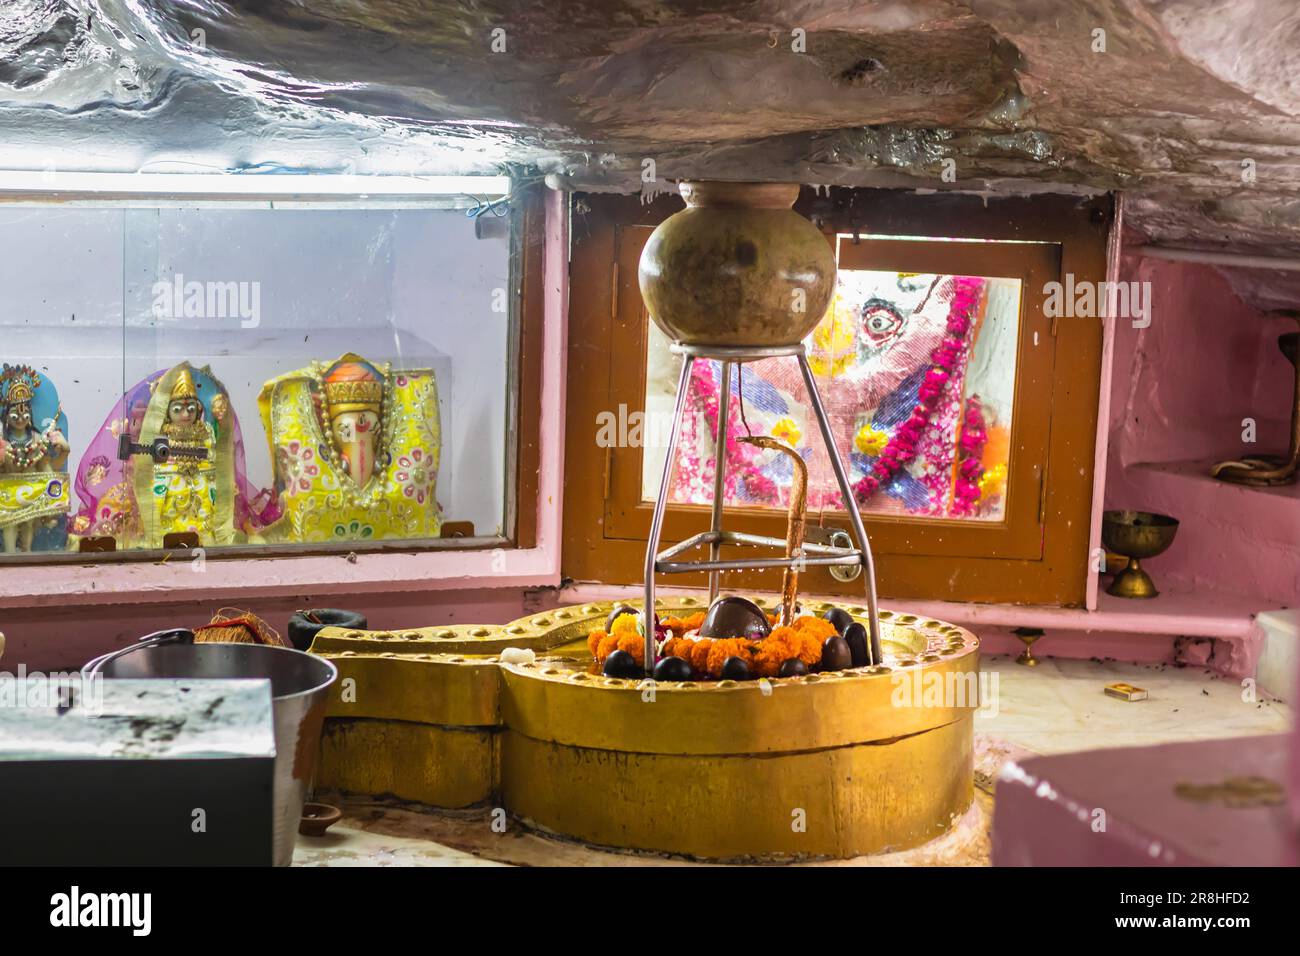 isolare il dio indù shivalinga antica statua a immagine del tempio è presa a ganesh tempio jodhpur rajasthan india. Foto Stock